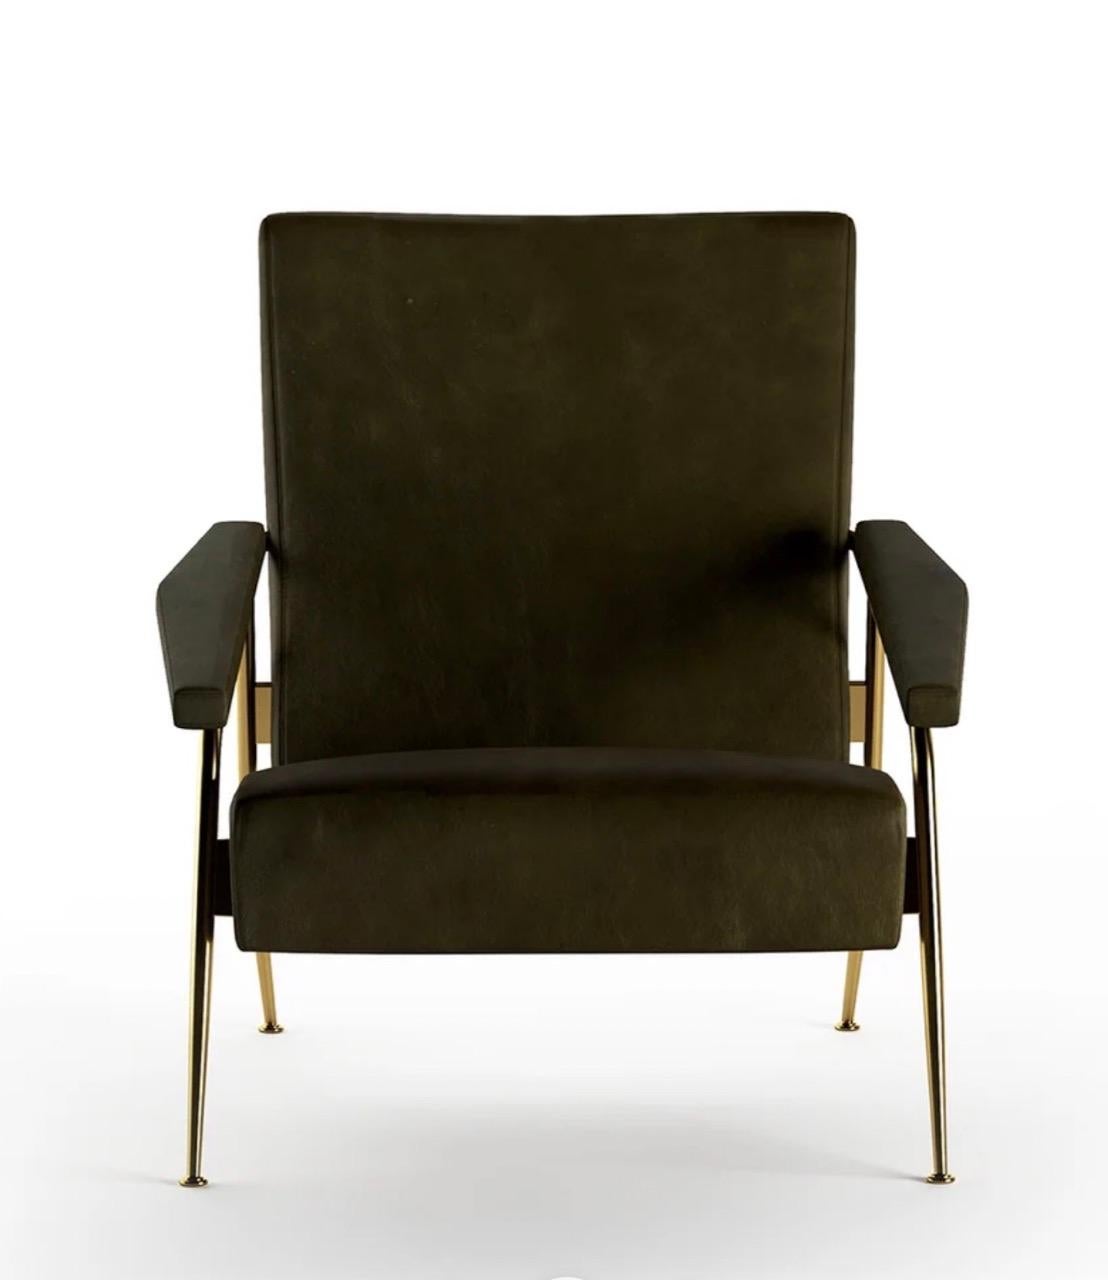 Le fauteuil iconique D.153.1 est une création du milieu du siècle du célèbre designer italien Gio Ponti. Doté d'un dossier haut et d'une légère inclinaison, il présente un mélange de tissus luxueux offrant un look contemporain et un confort